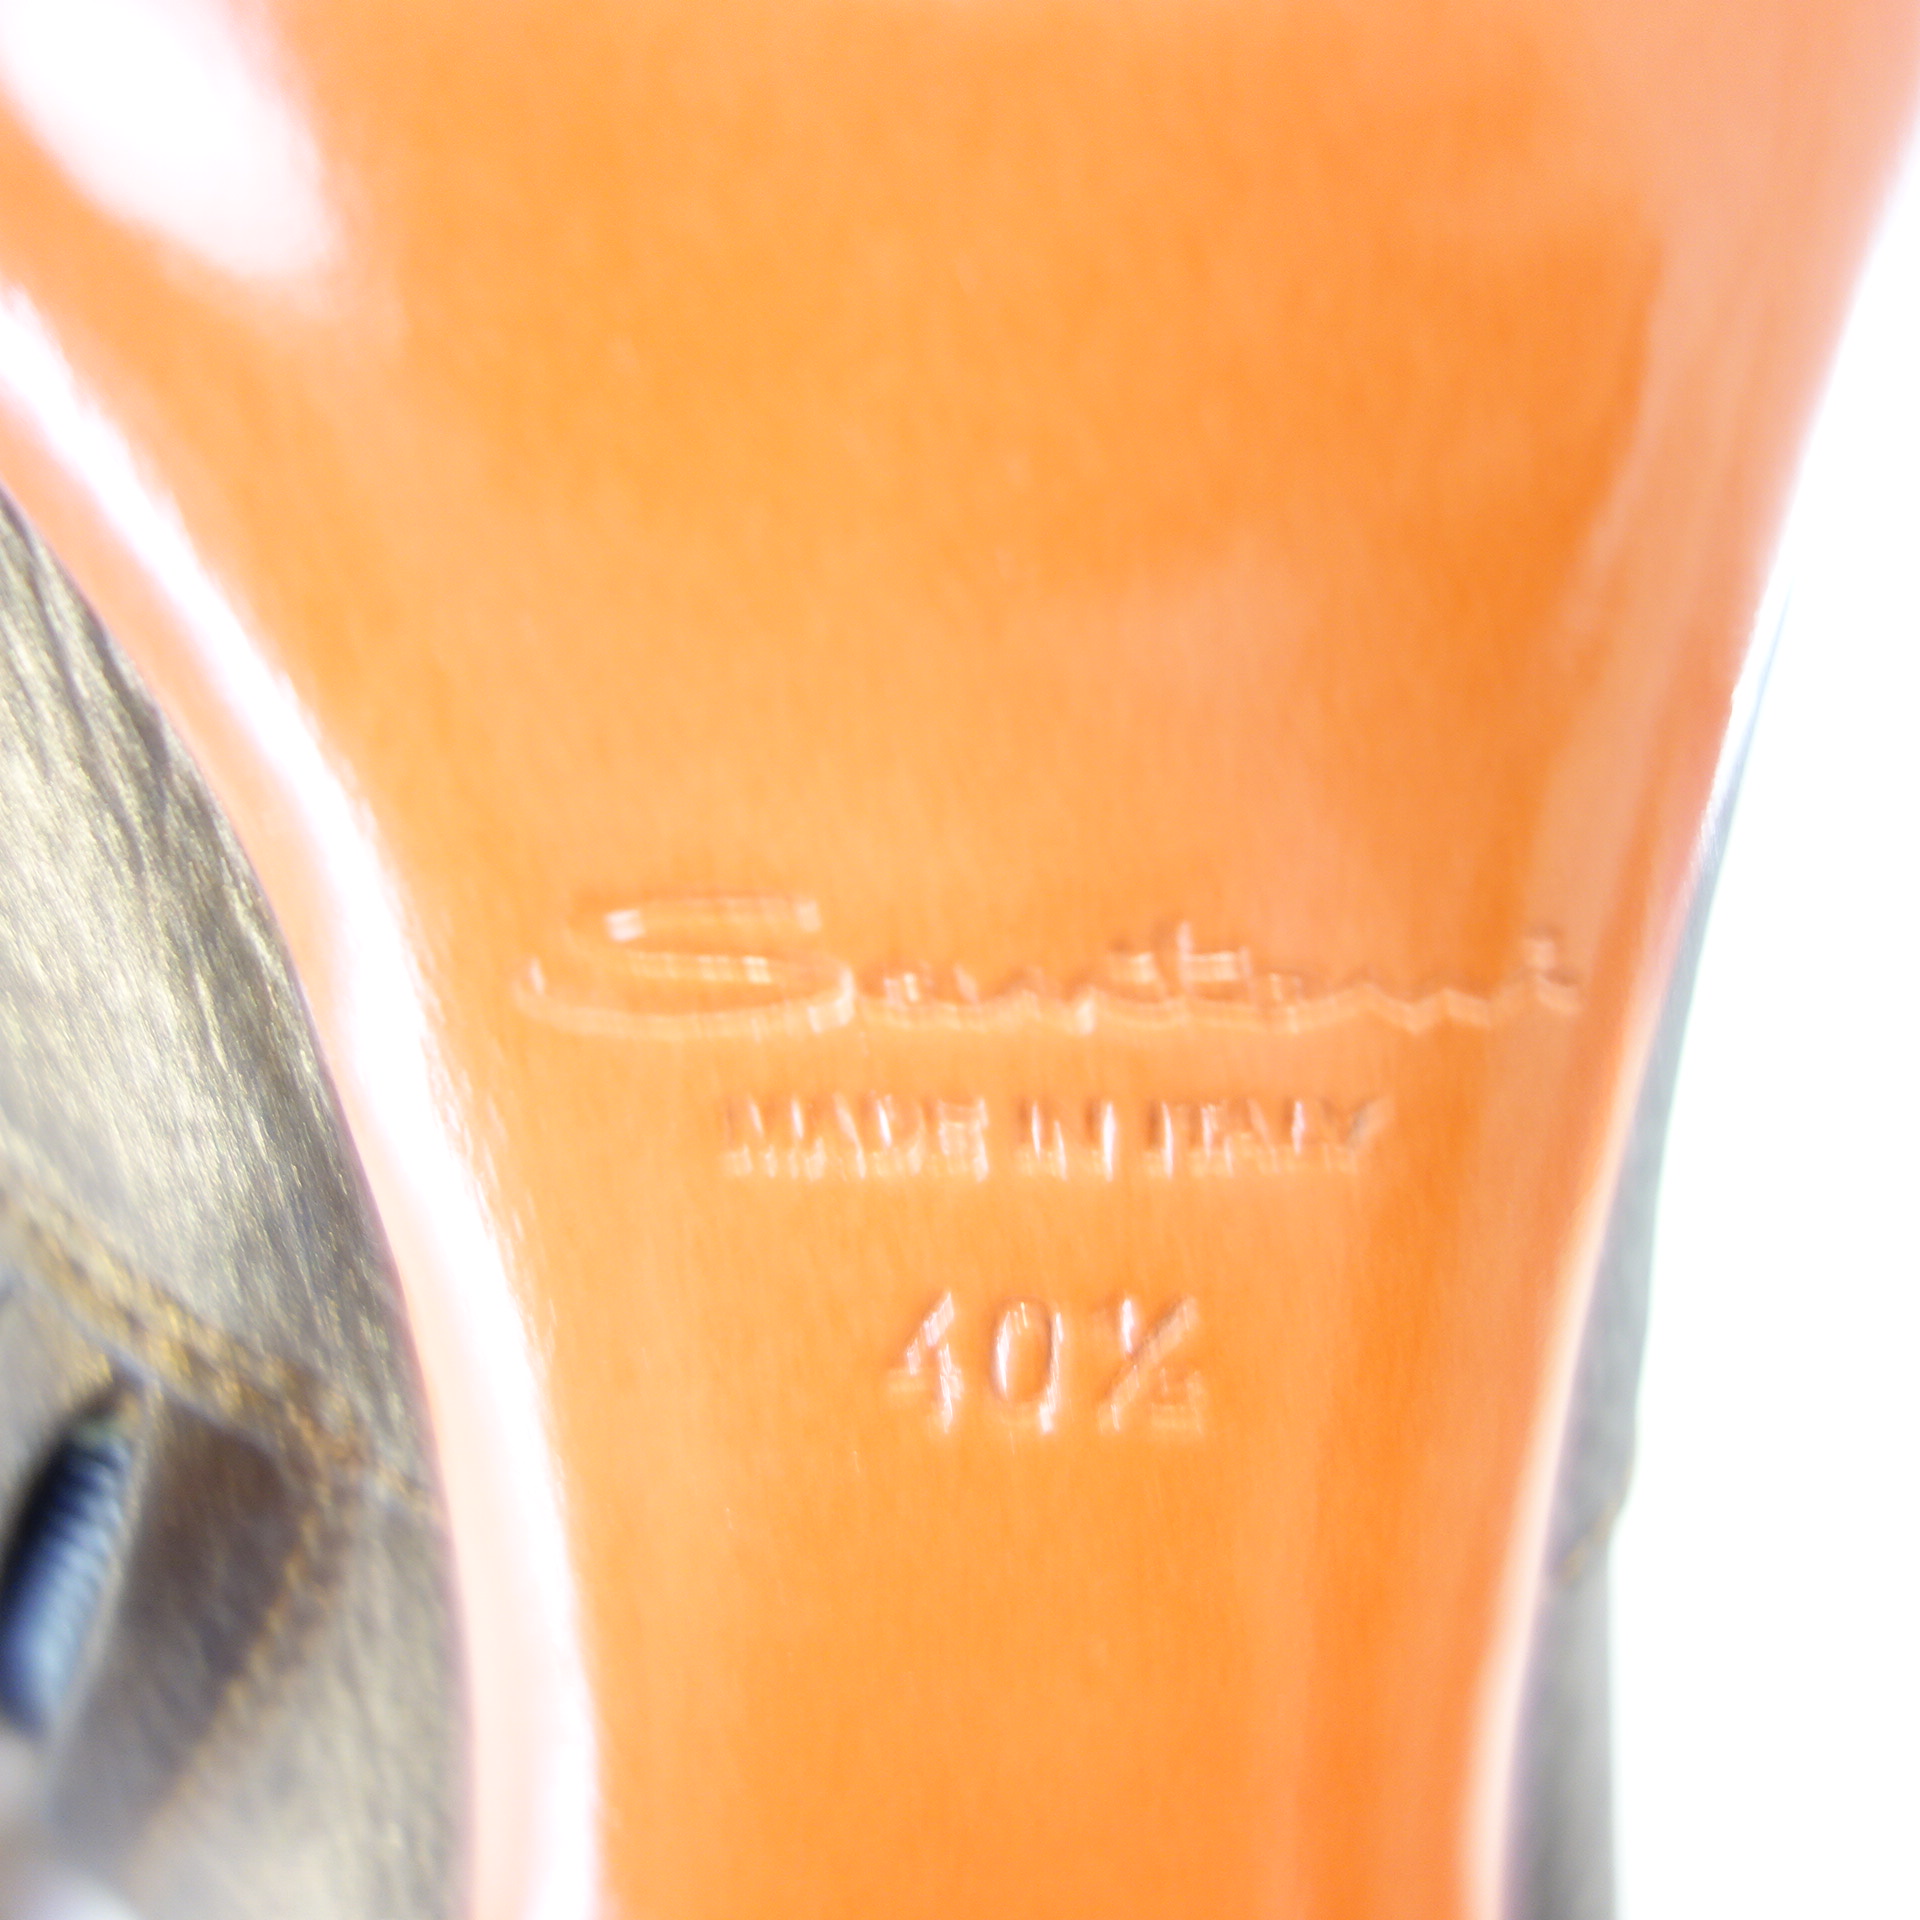 SANTONI Stiefeletten Schuhe Braun Bronze Schimmer Absatz Leder Größe 40,5